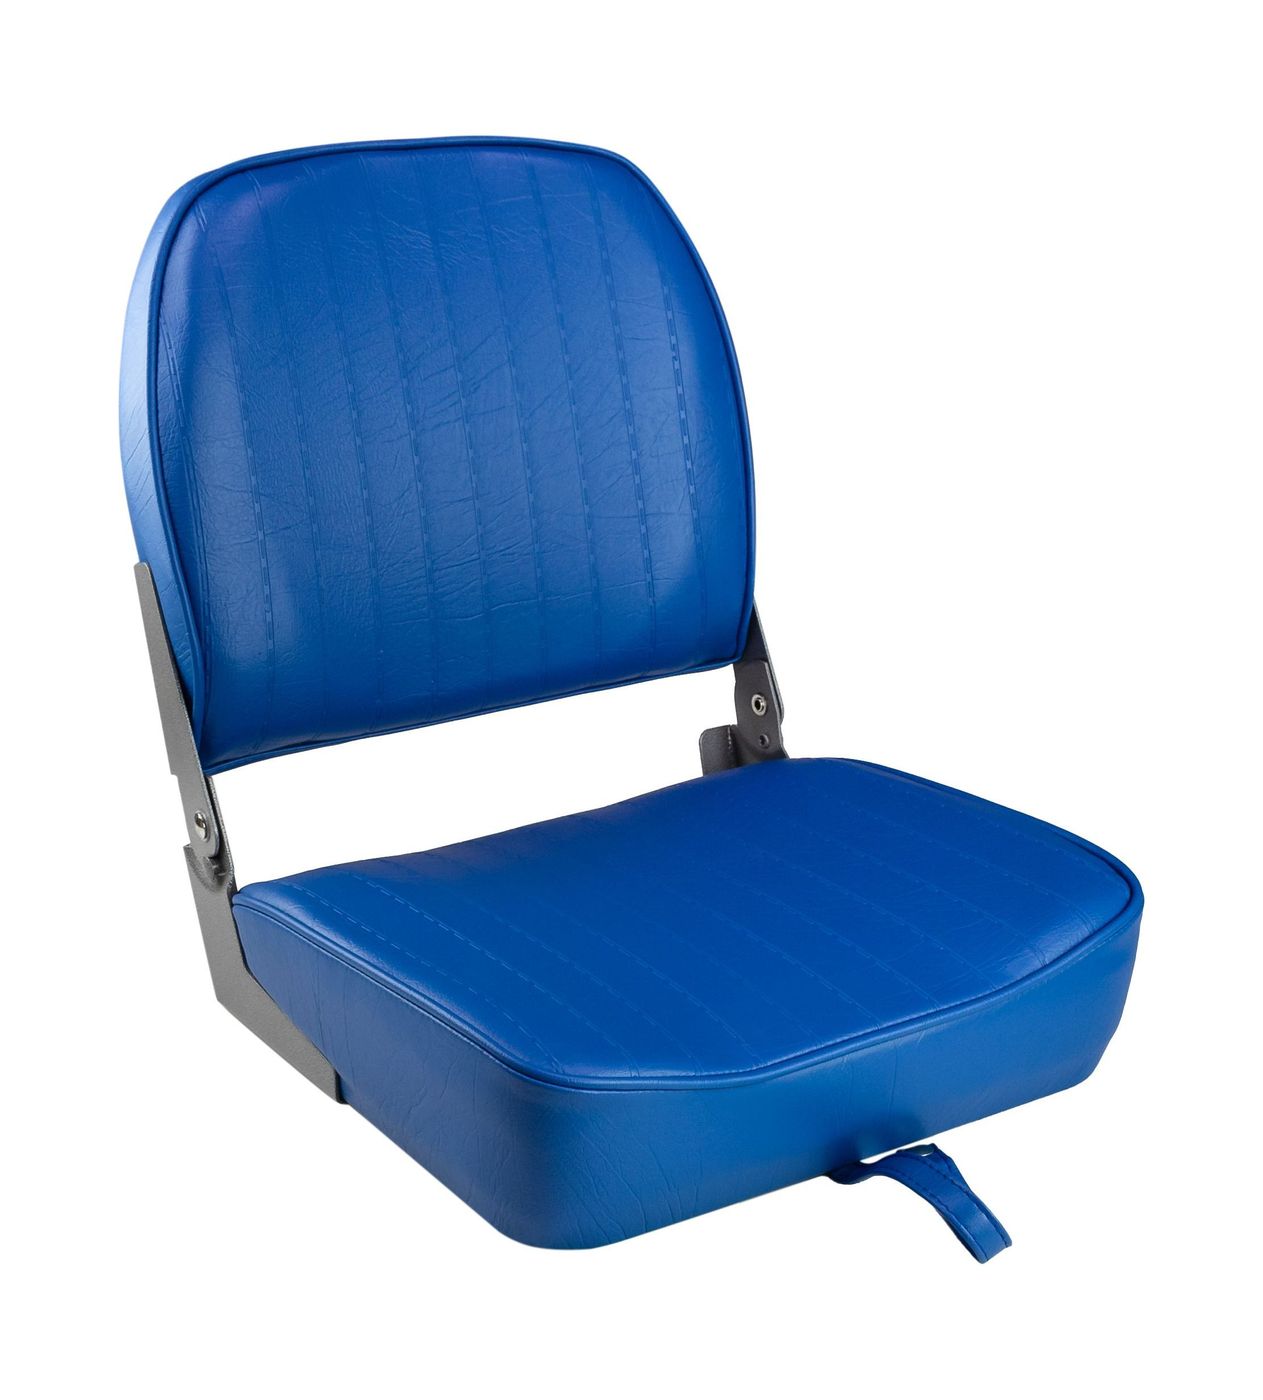 Кресло складное мягкое ECONOMY с низкой спинкой, цвет синий 1040621 кресло мягкое deluxe sport с откидным валиком белый синий 1043251